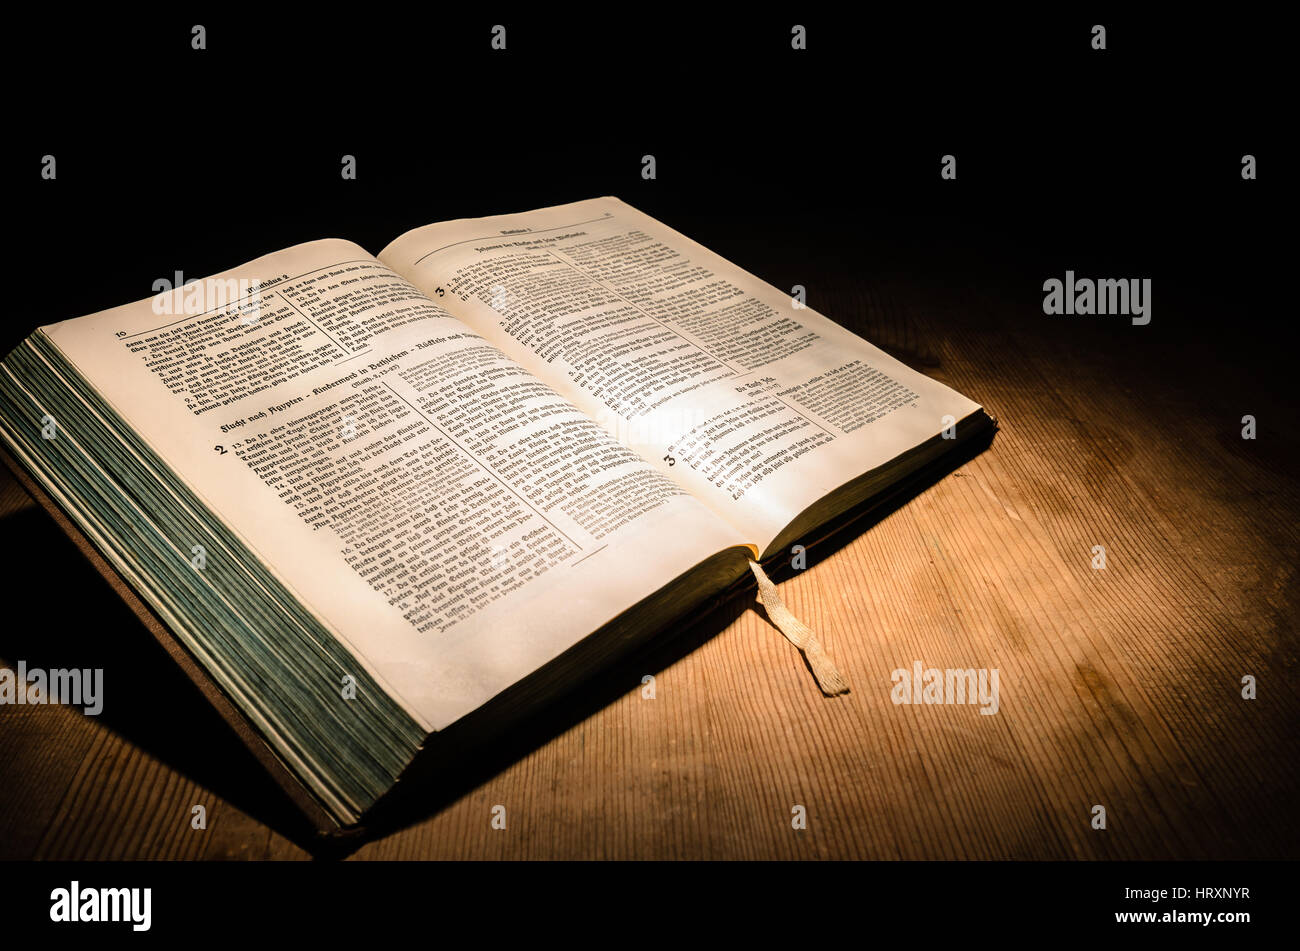 Vieille bible sur une table en bois avec fond sombre Banque D'Images